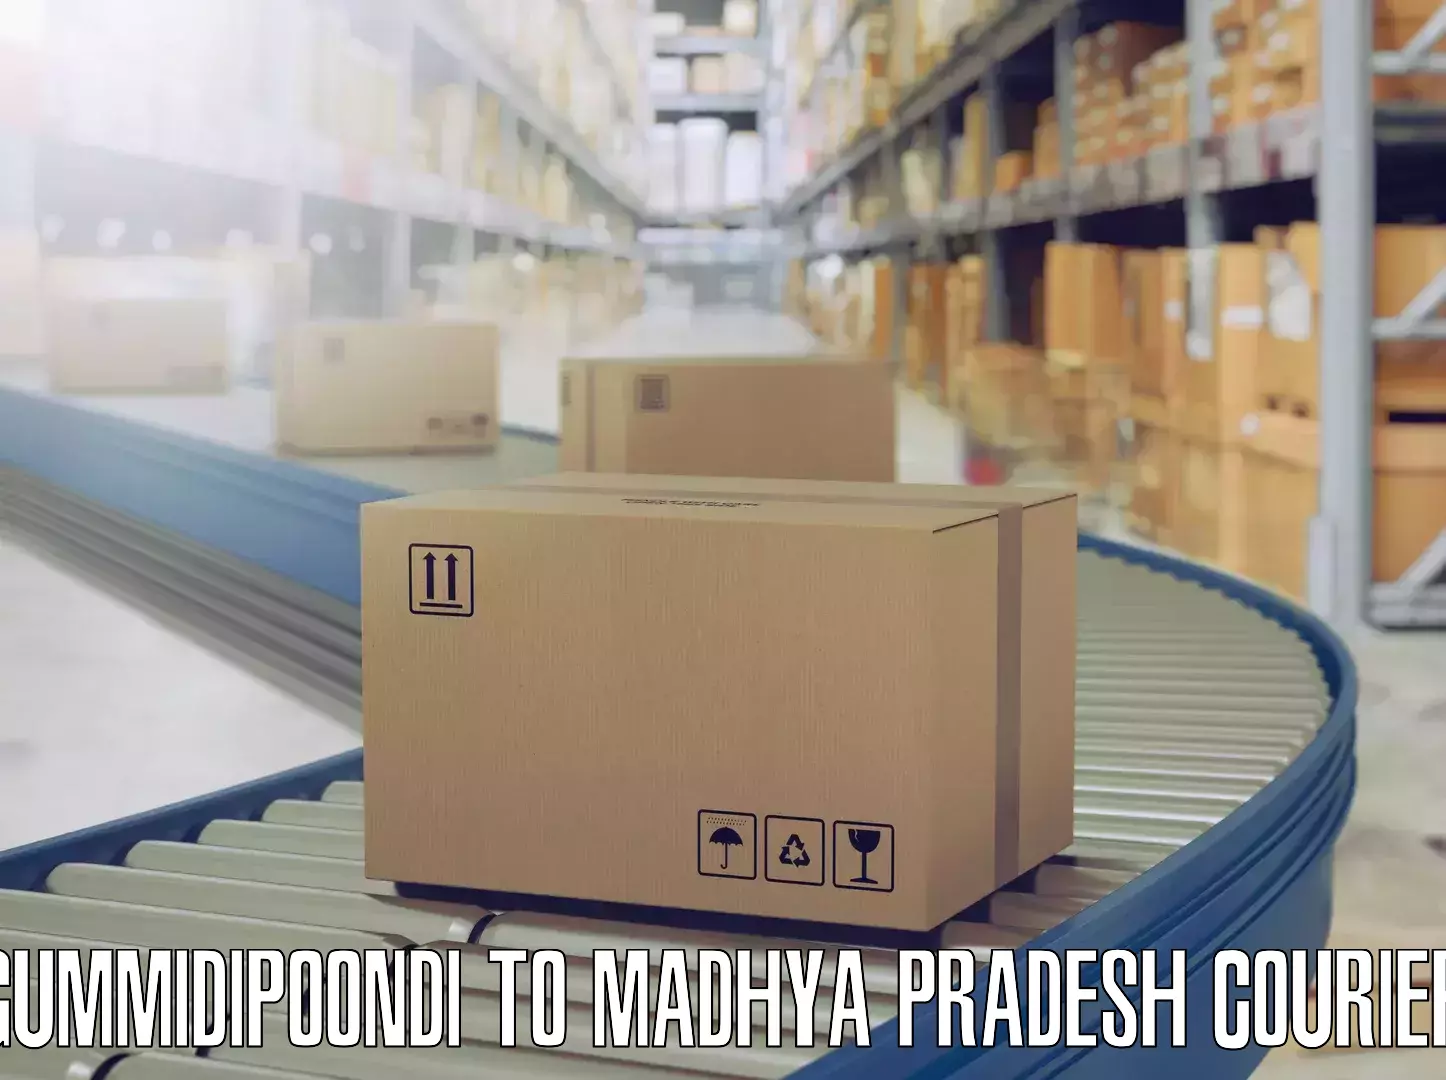 Furniture logistics Gummidipoondi to Mandideep